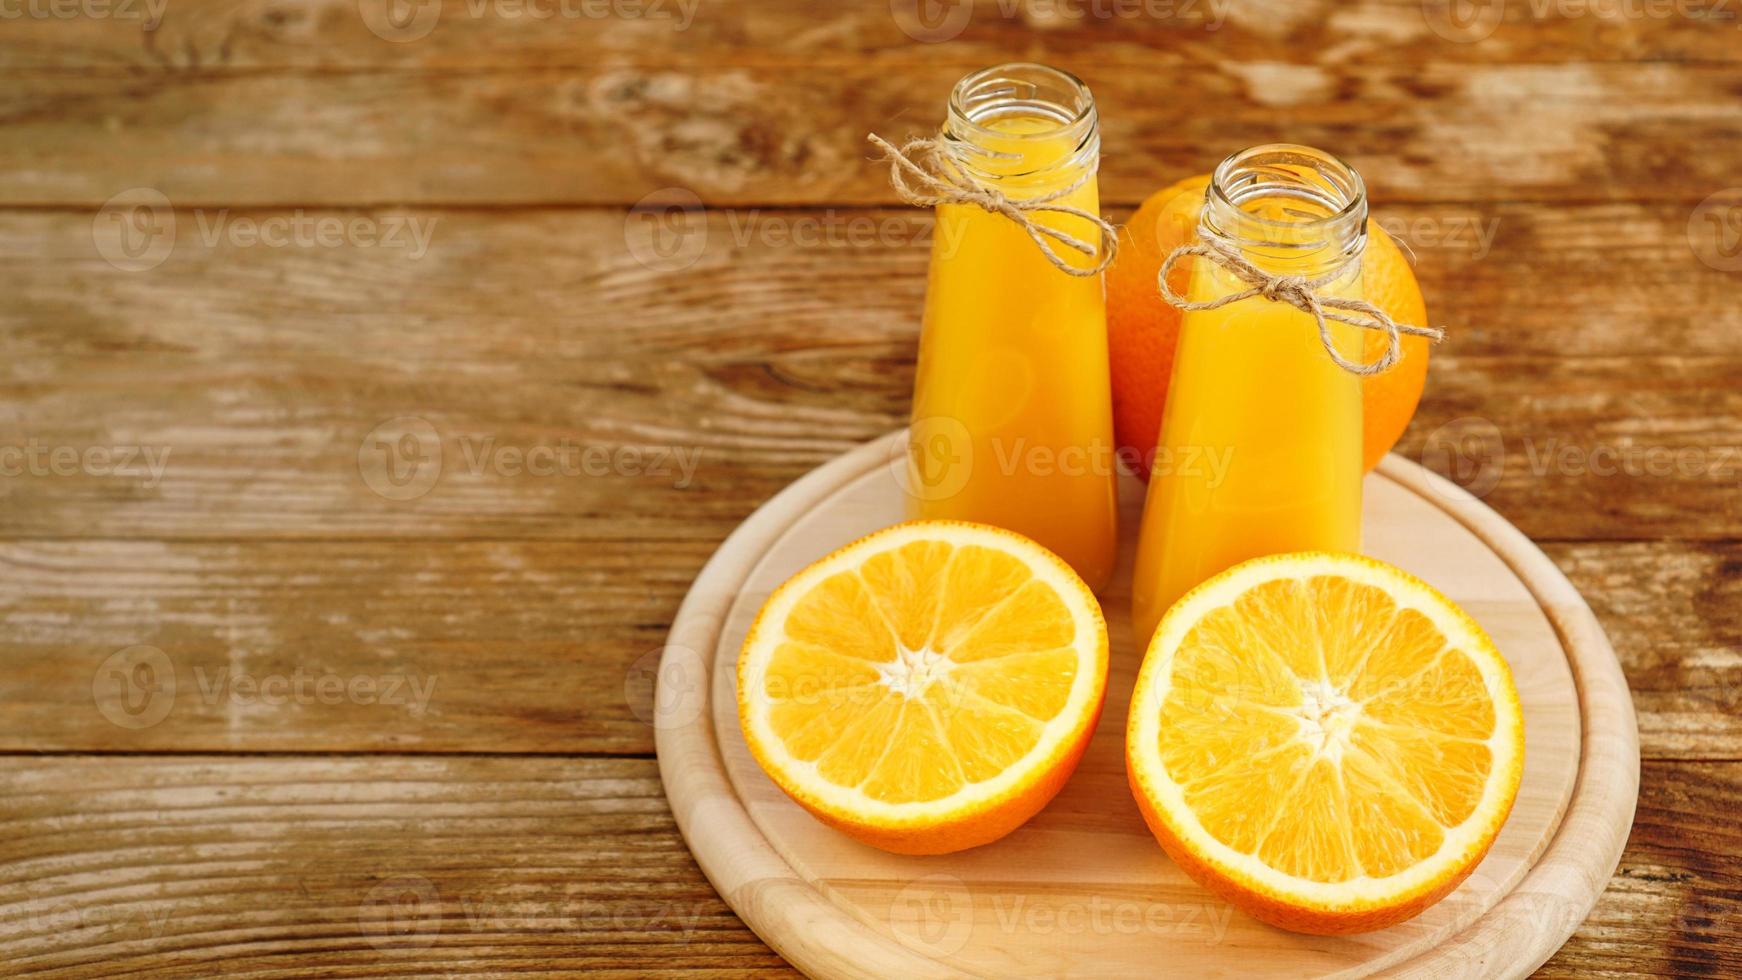 färsk apelsinjuice på träbord på en träskiva foto